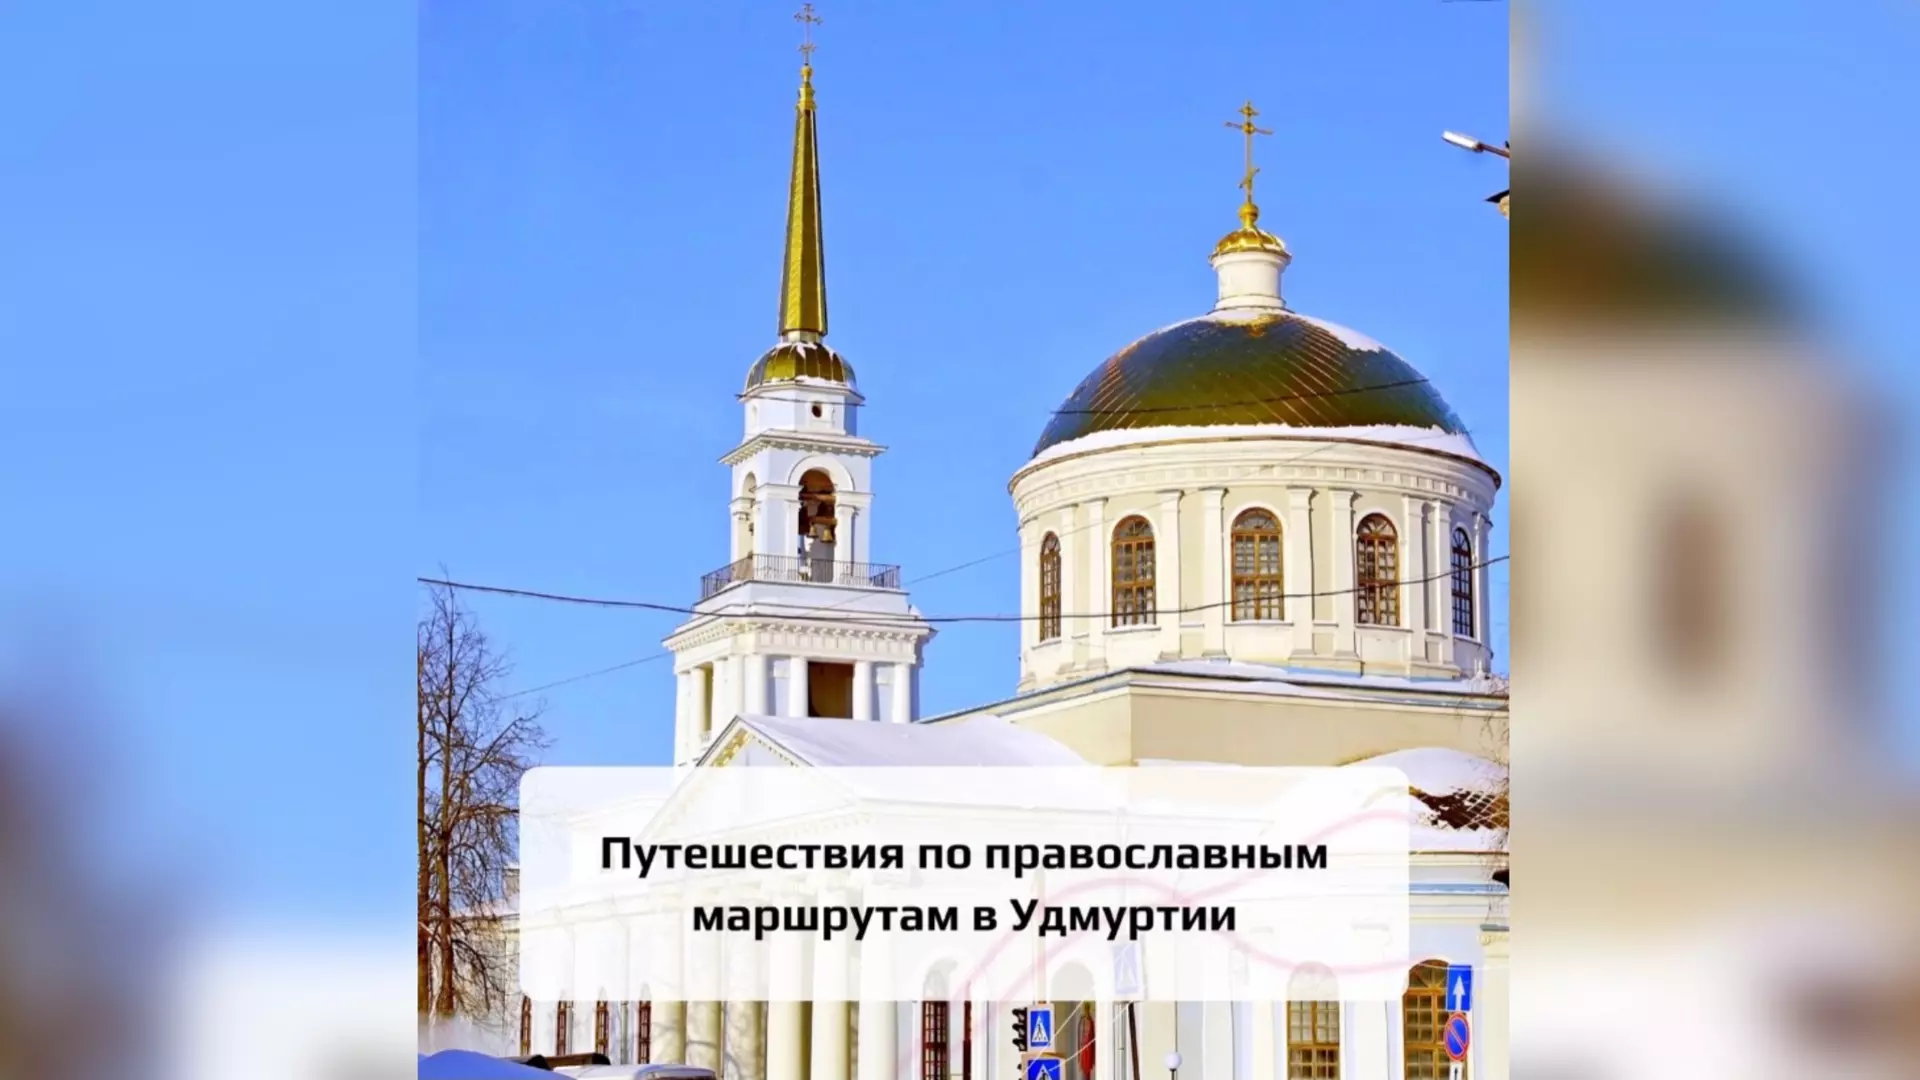 Экскурсии по православным местам создали в Удмуртии